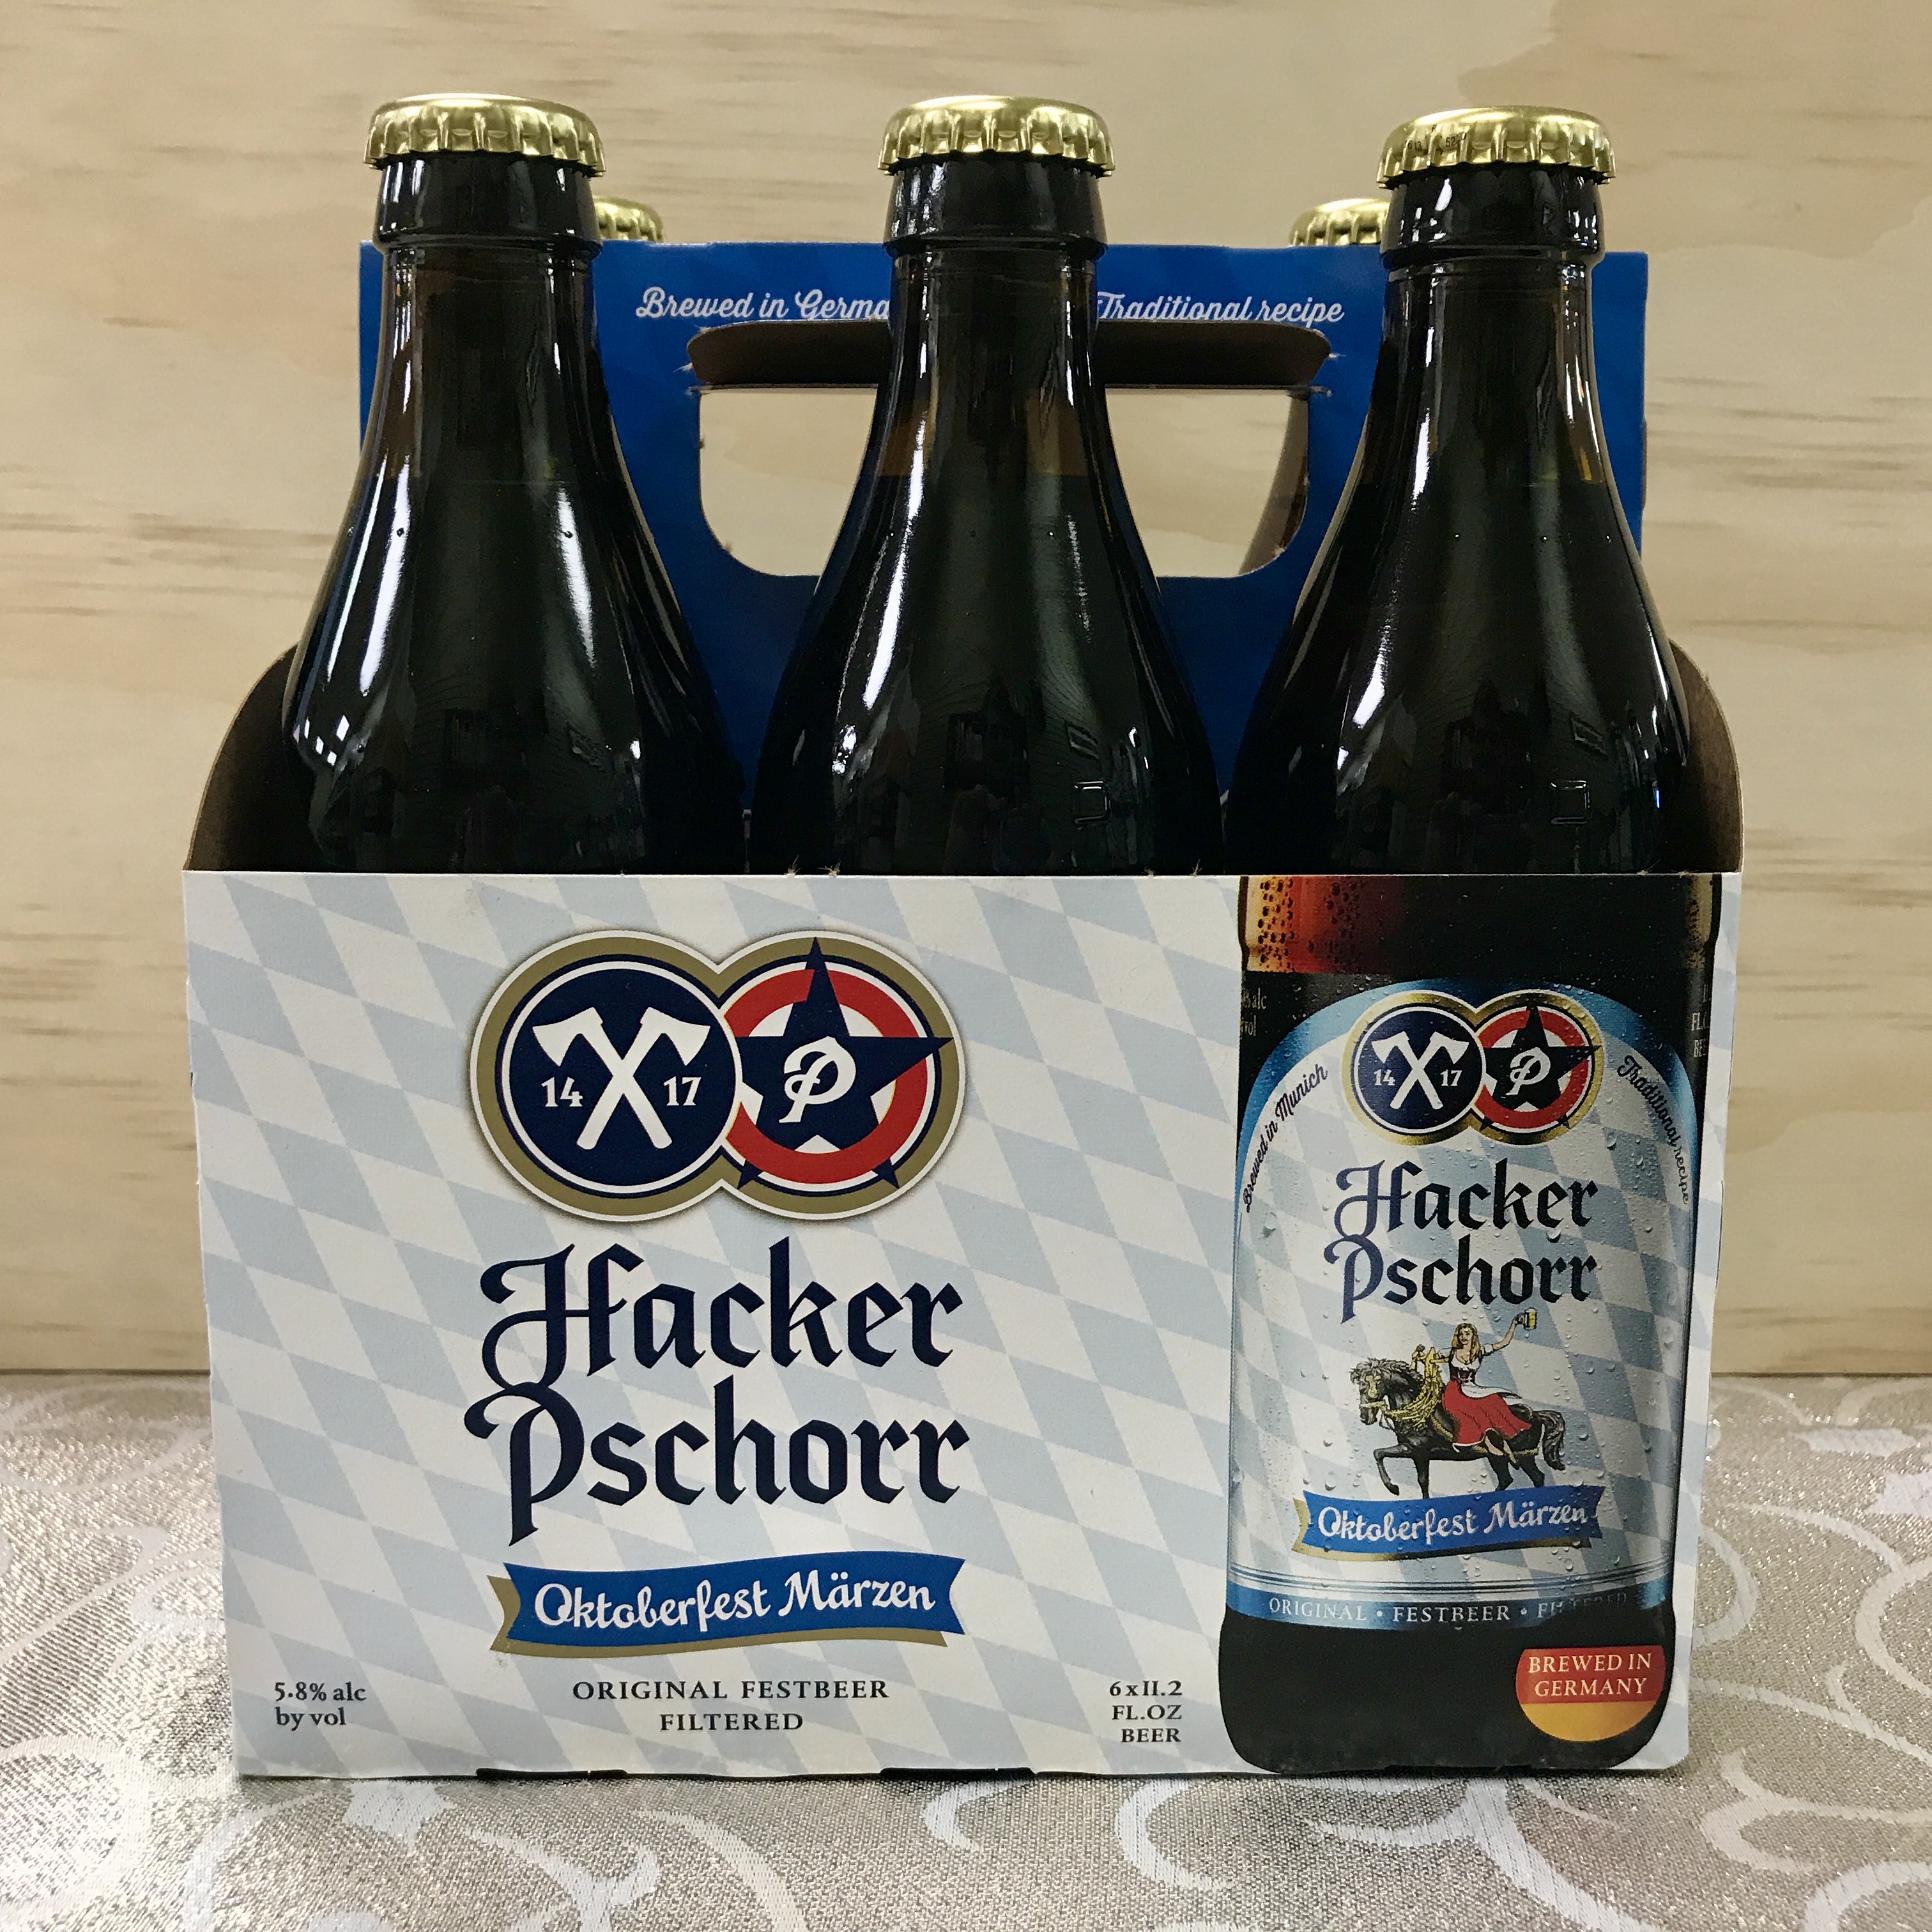 Hacker Pschorr Oktoberfest Marzen 6 x 12 oz bottles